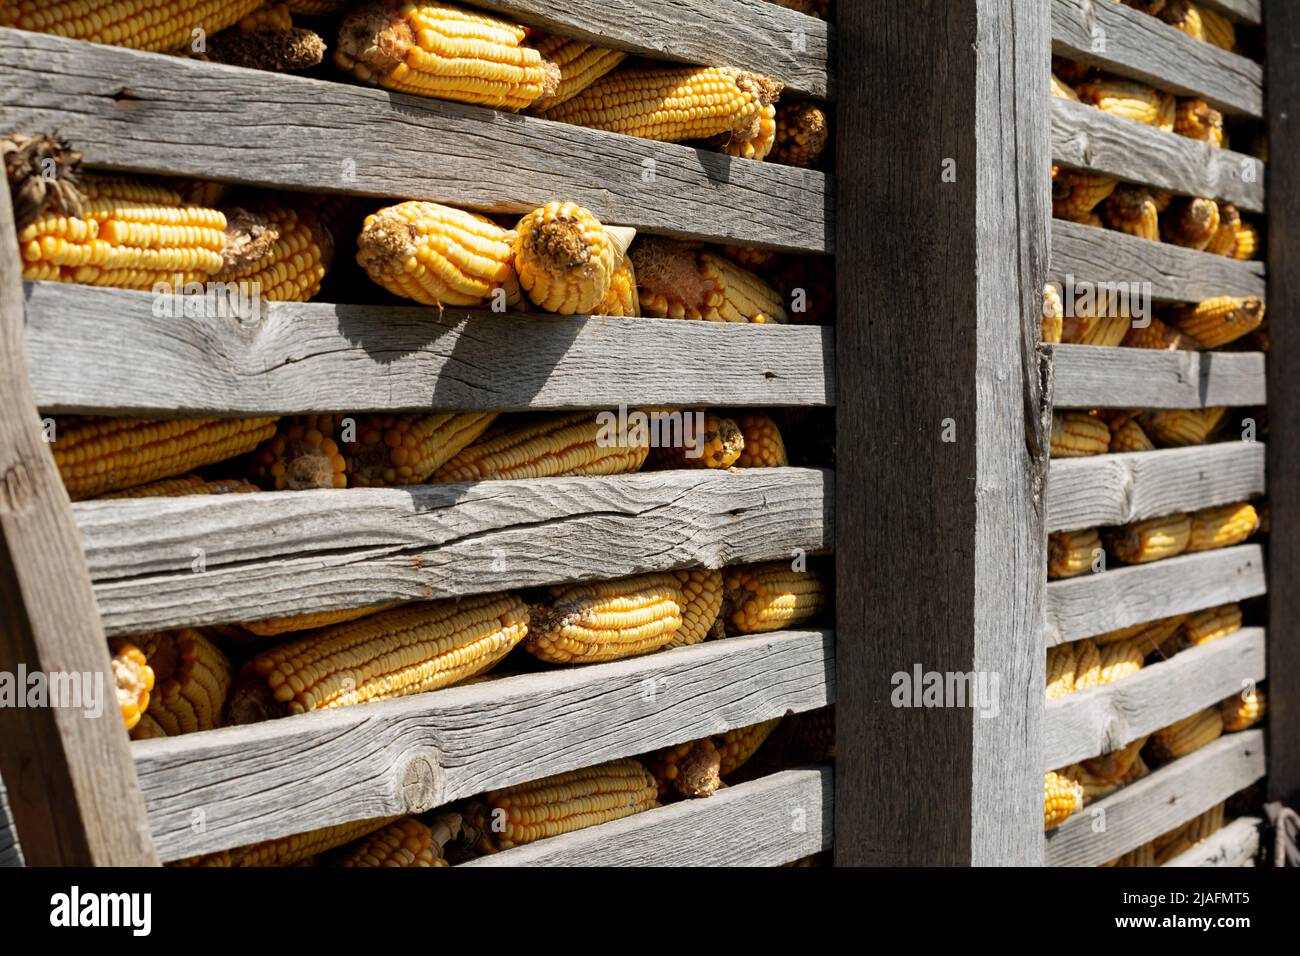 Il raccolto è finito. Un vecchio presepe o un'asta, fatta di travi e listelli di legno, è caricato con le spighe mature di mais. Foto Stock